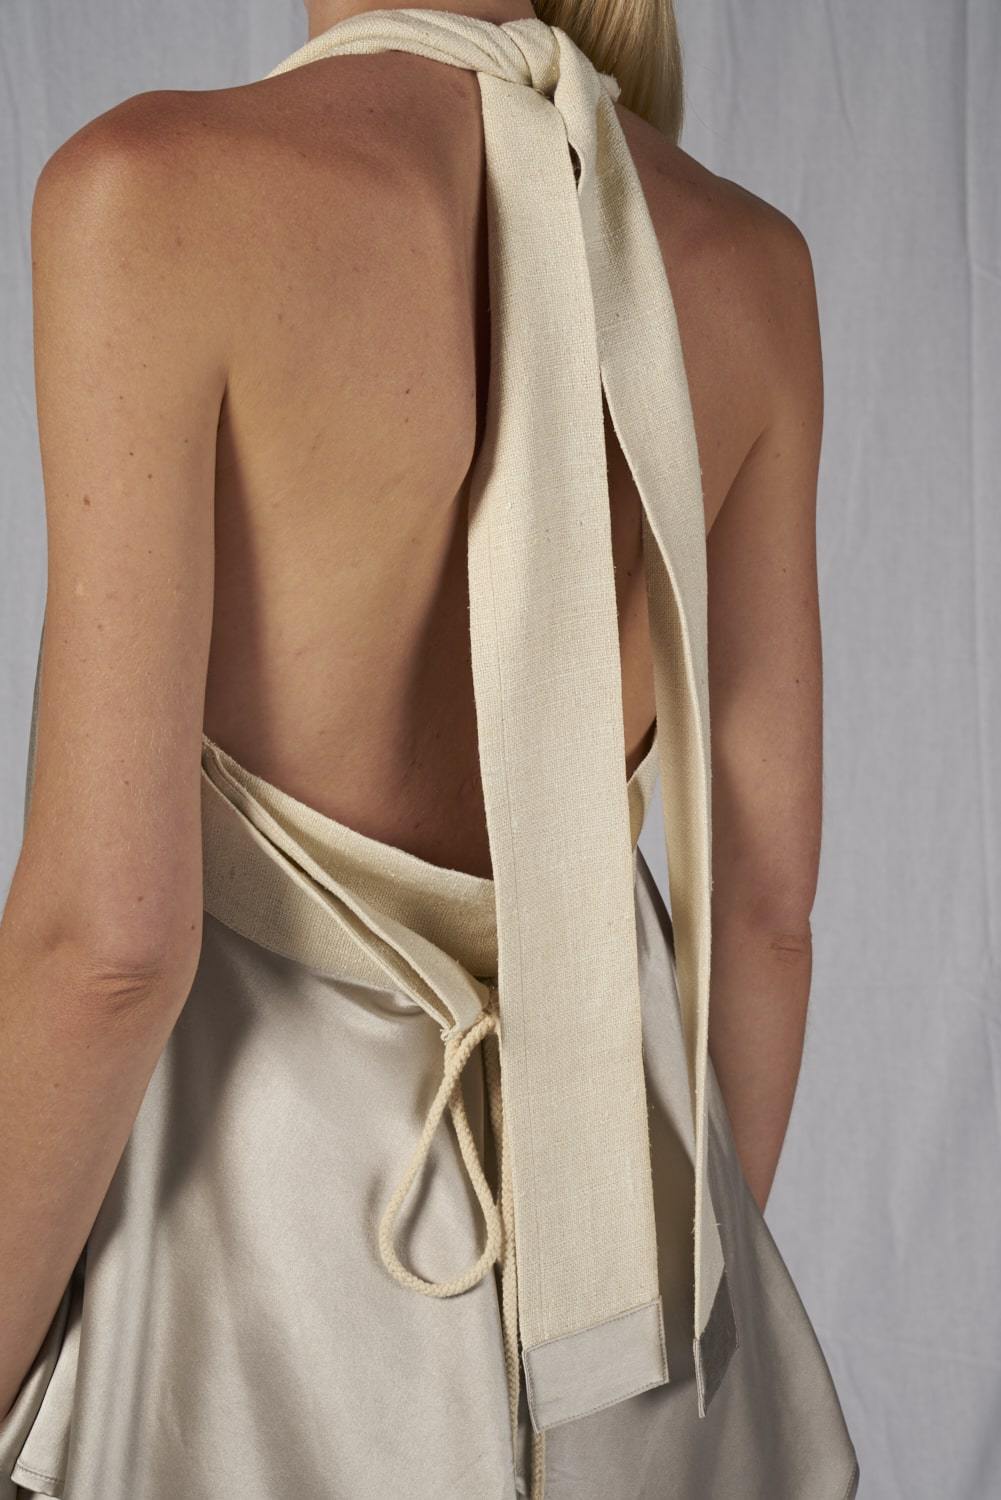 Lapis Top - Cora Bellotto - The Clothing LoungeCora Bellotto